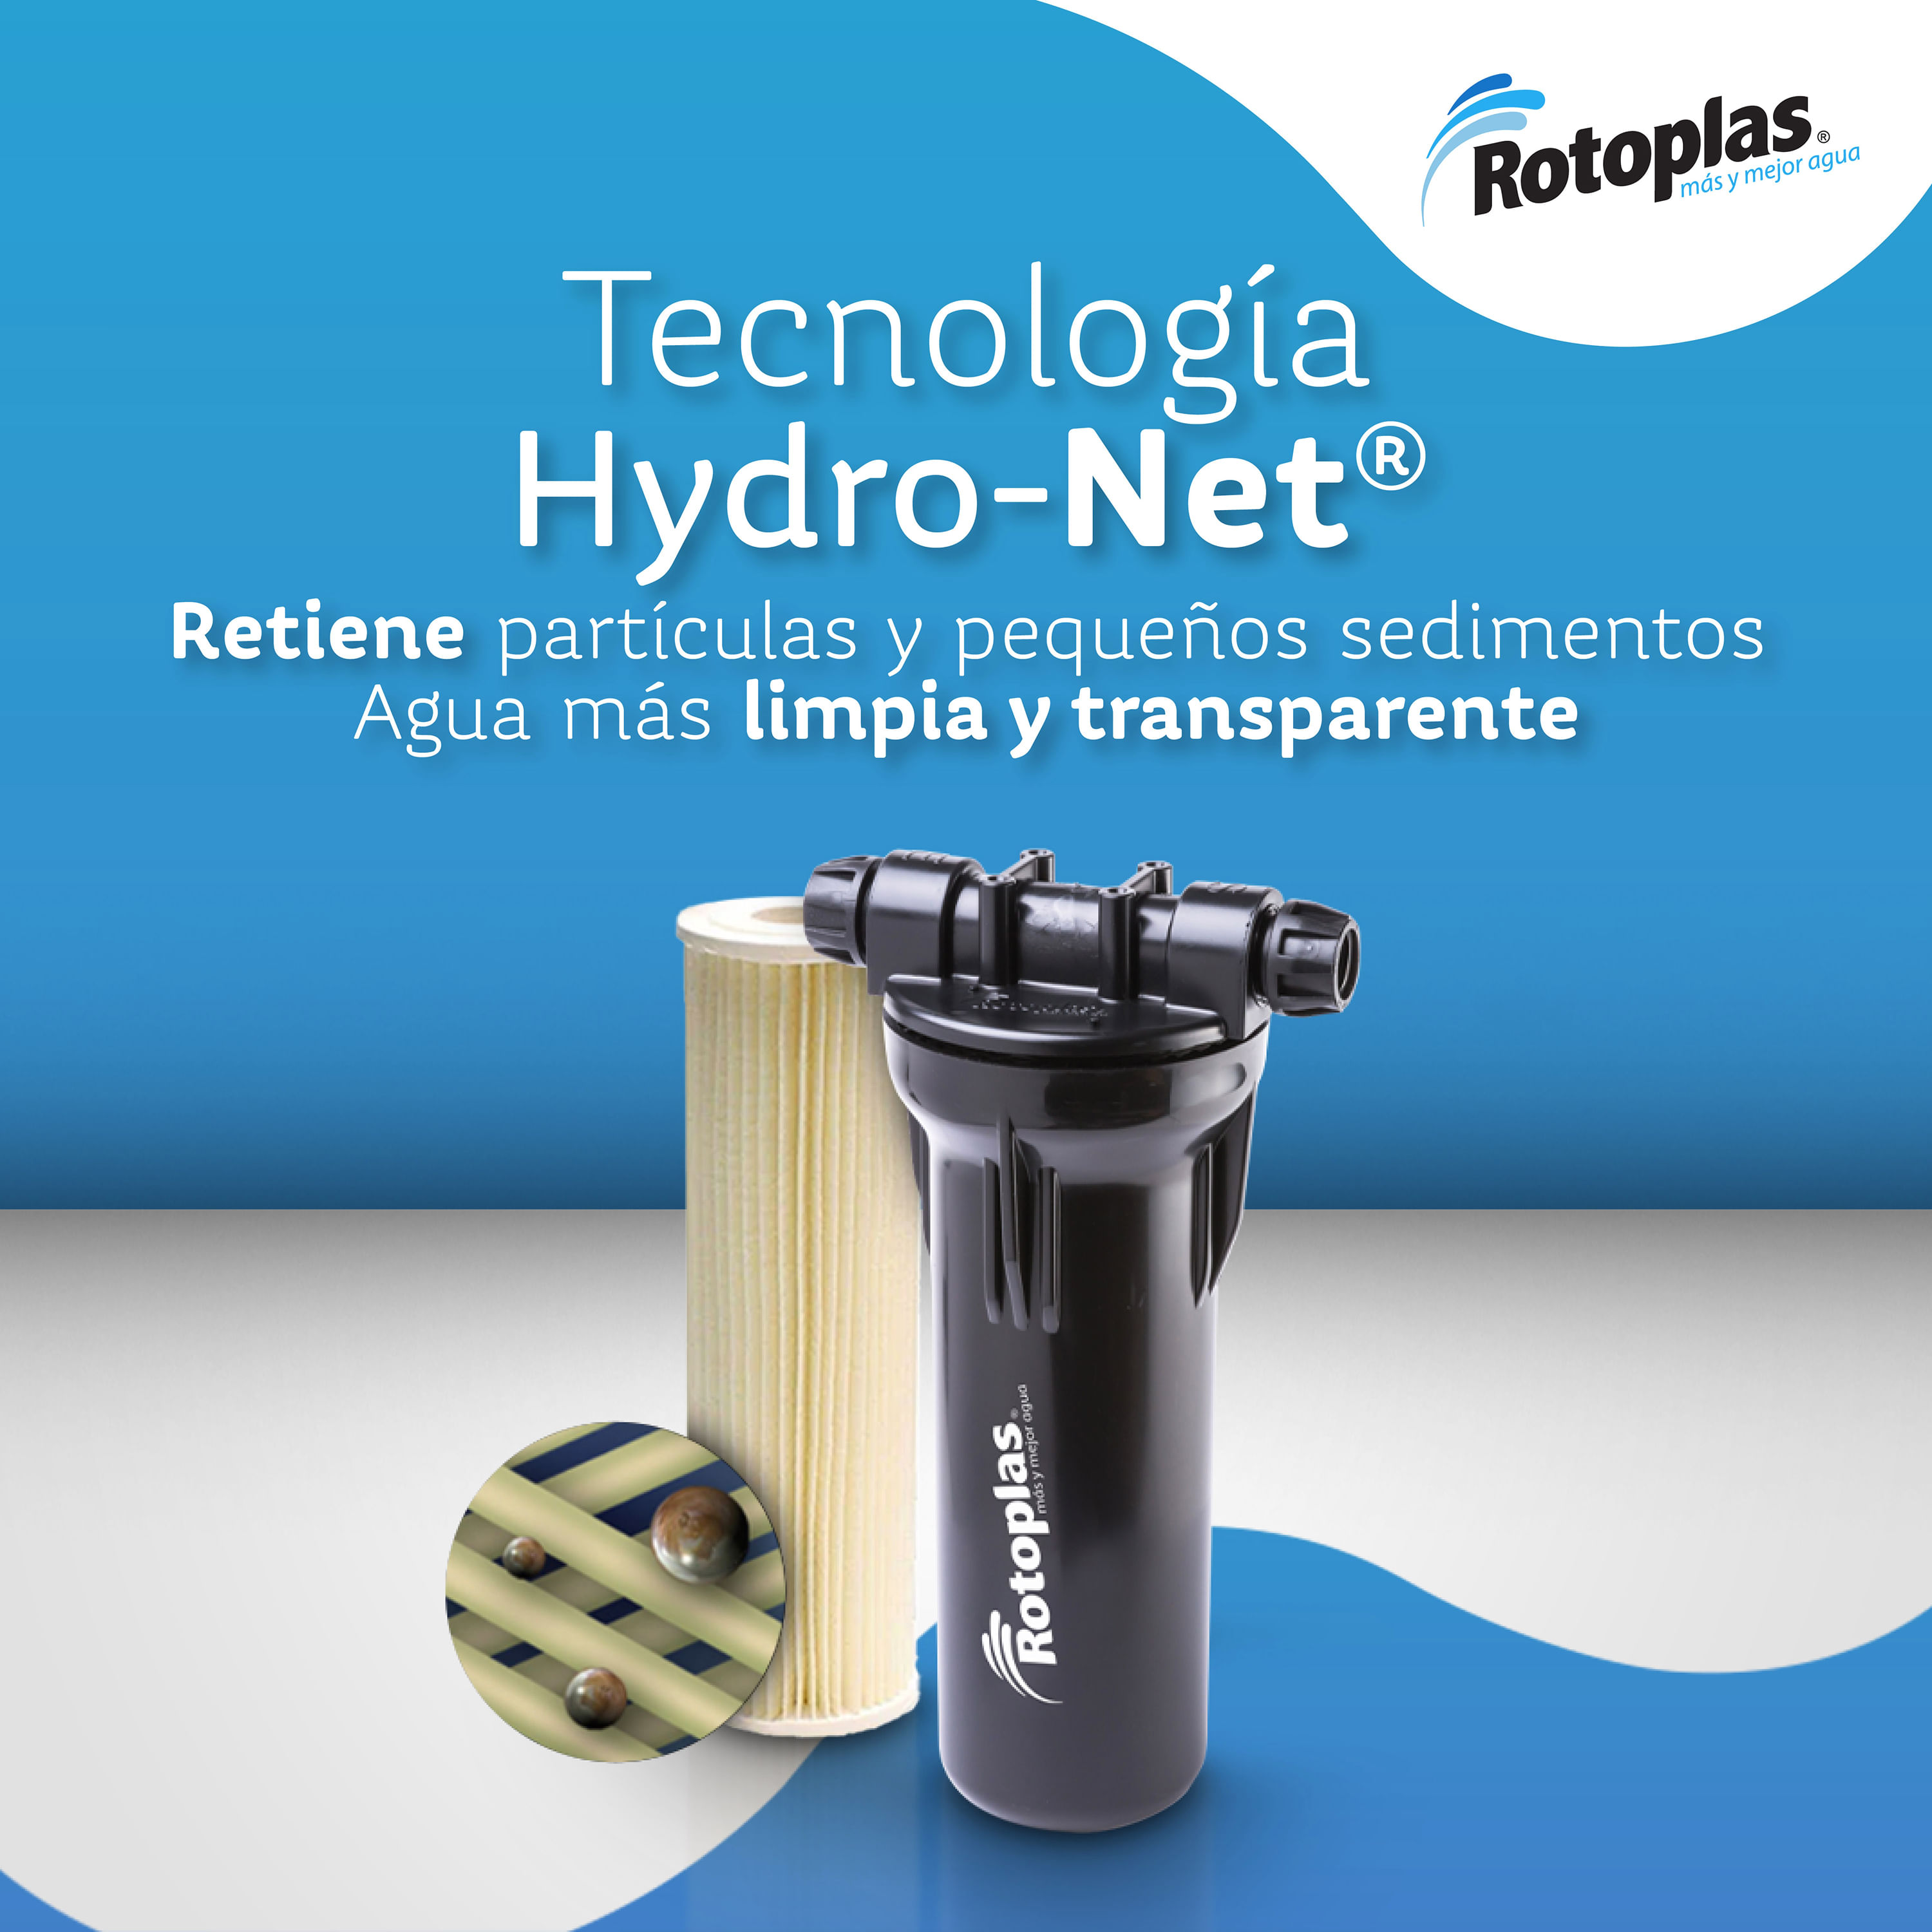 El filtro de agua Rotoplas que debes tener en tu casa - Rotoplas  Centroamérica